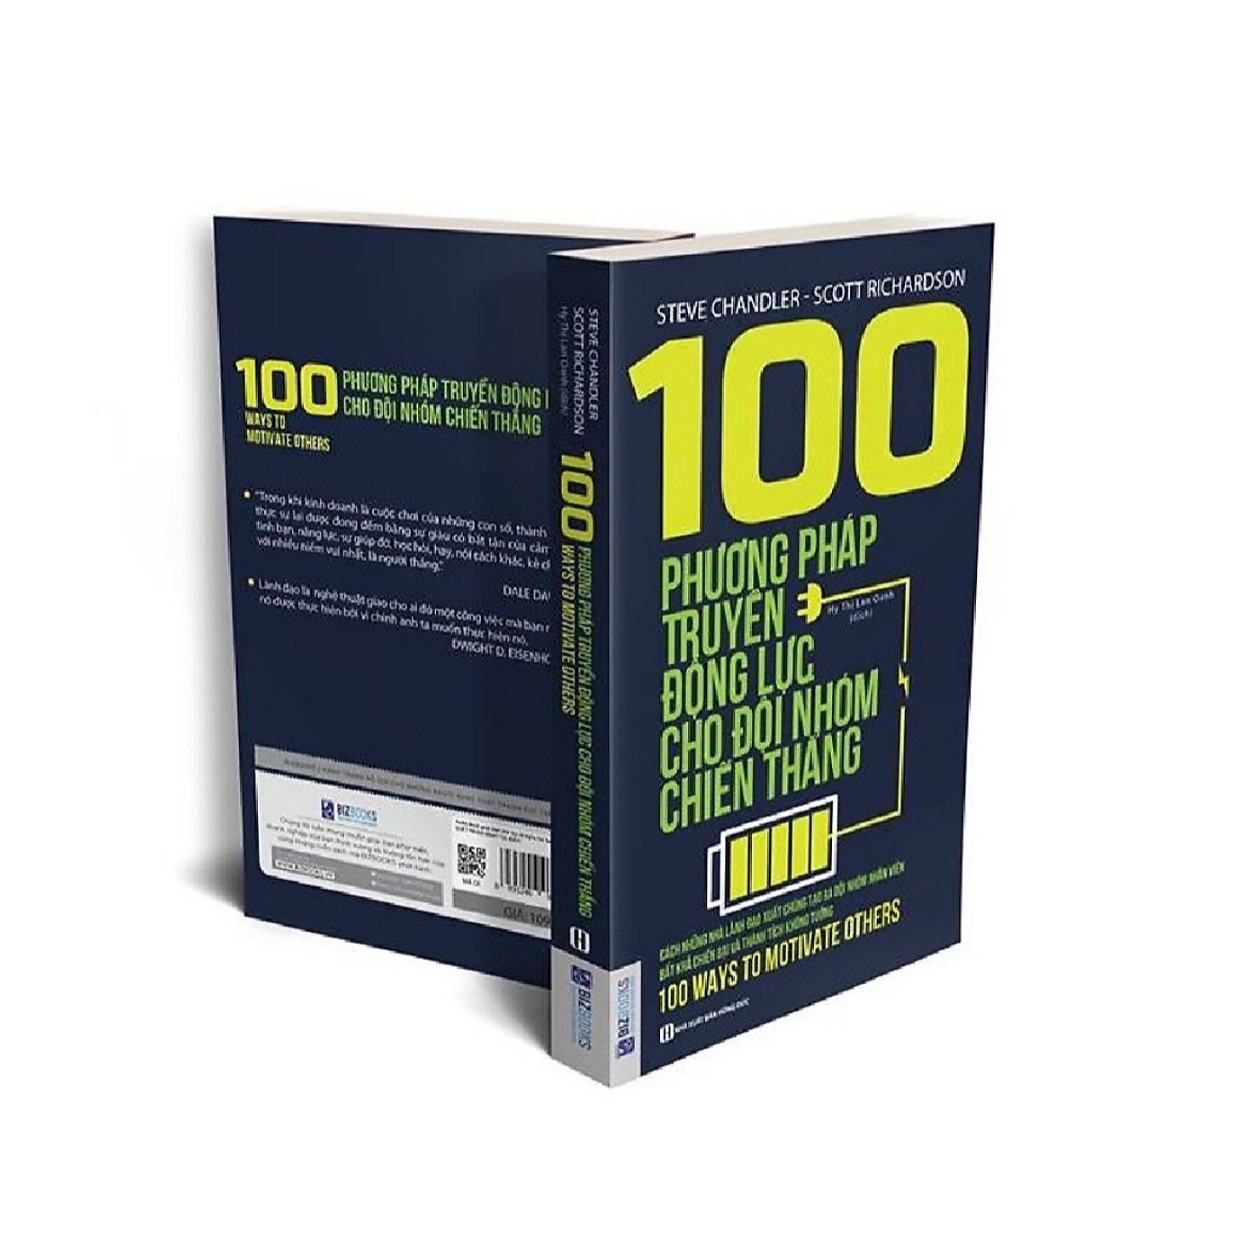 100 phương pháp truyền động lực cho đội nhóm chiến thắng ( tặng kèm bút bi )